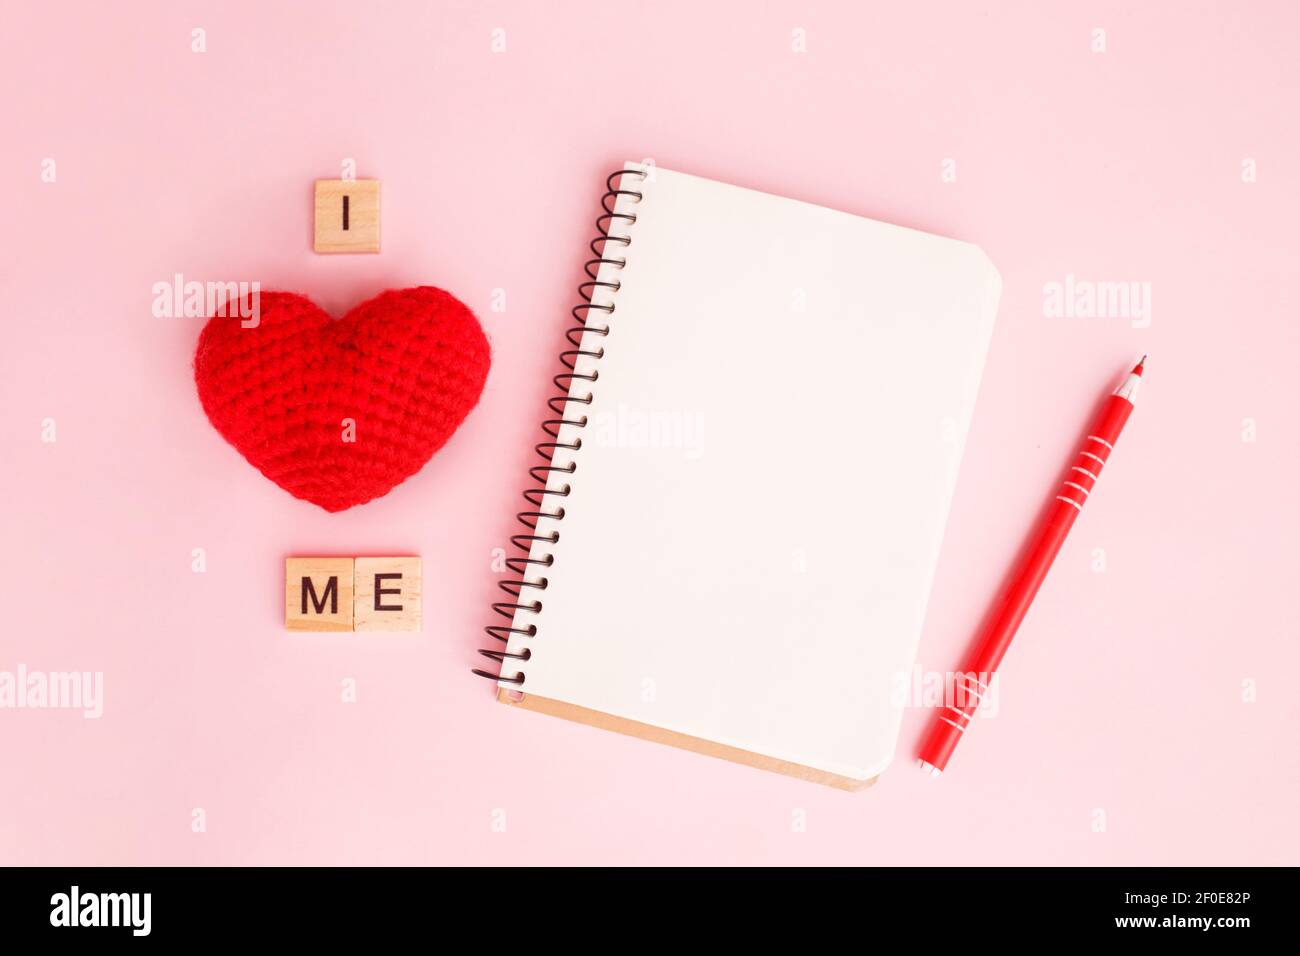 Ein Notizbuch mit einem geschriebenen Satz Ich liebe mich auf rosa Hintergrund. Konzept psychische Gesundheit Journaling, gesunde Denkweise, mich selbst akzeptieren Stockfoto